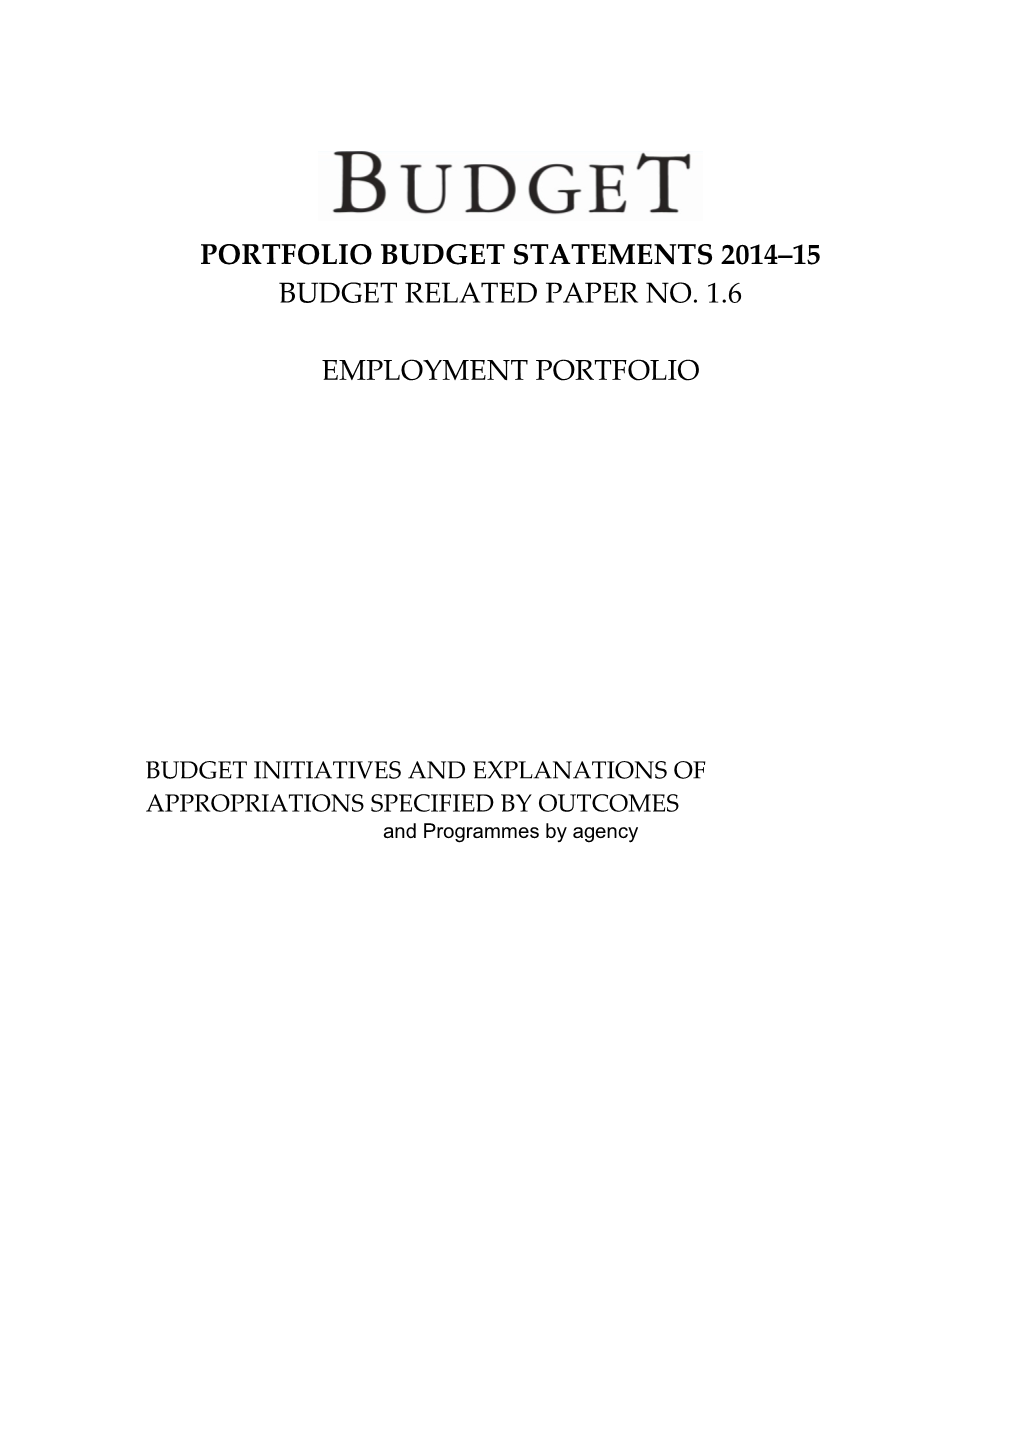 Portfolio Budget Statements 2014 15